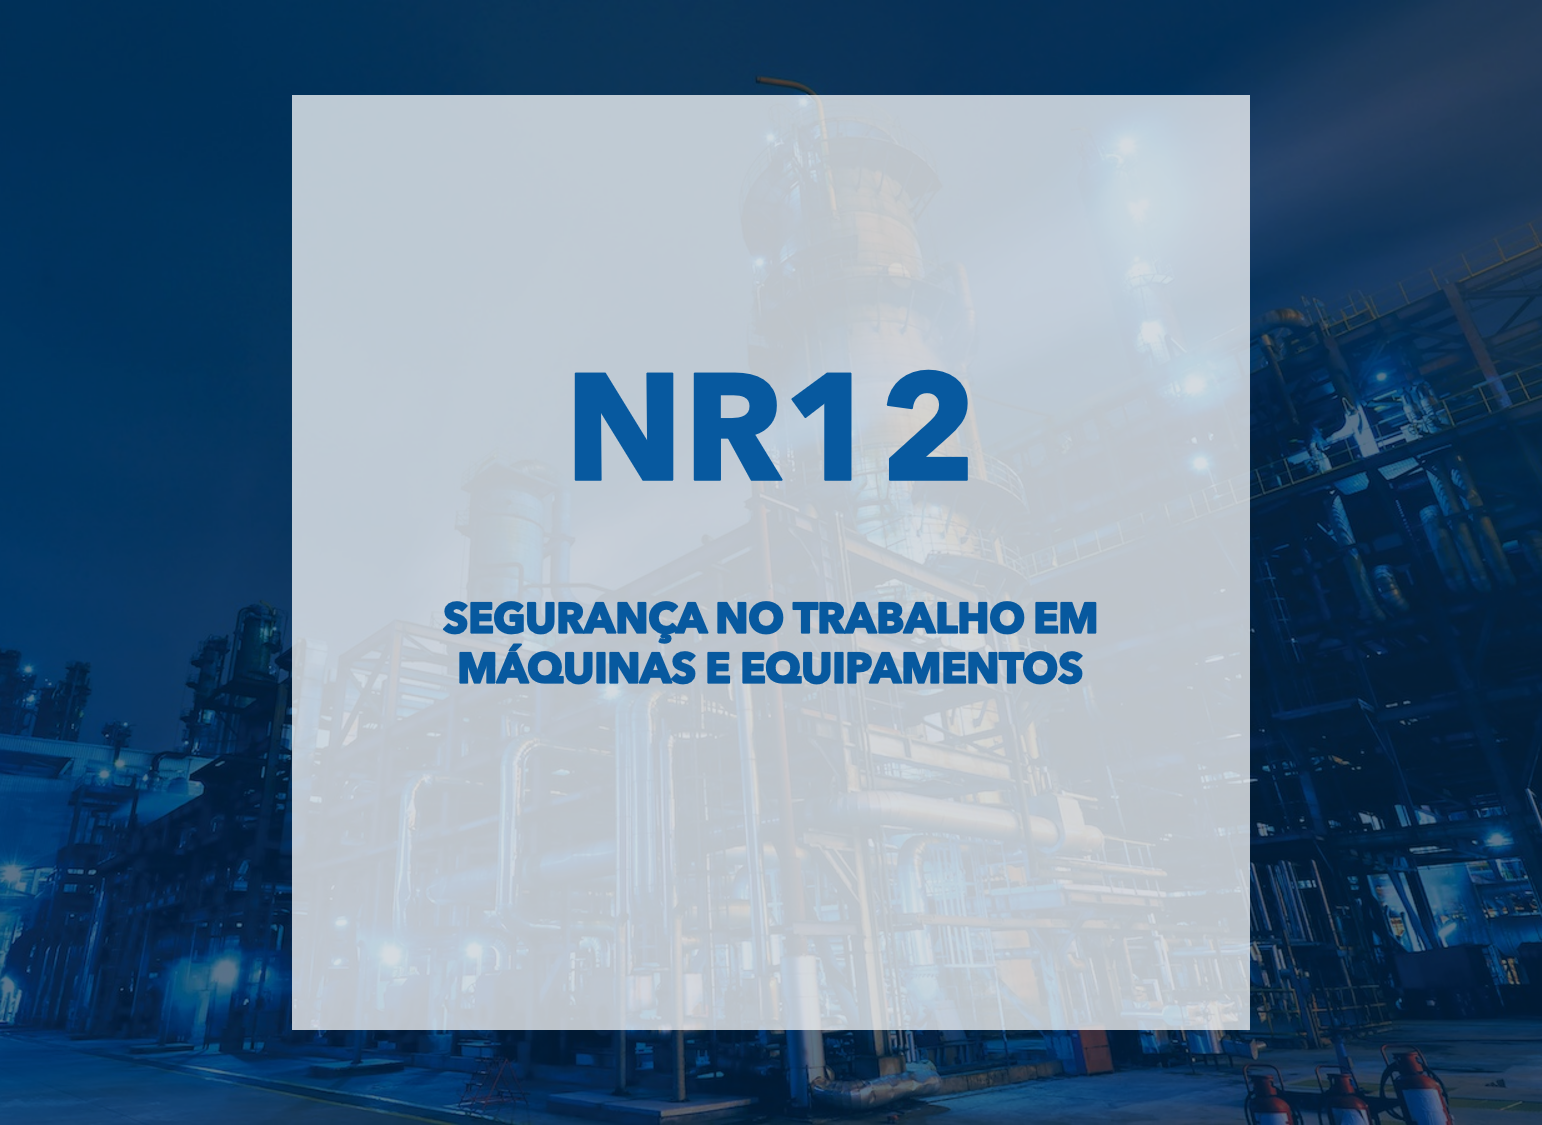 NR12 - Segurança em máquinas e equipamentos